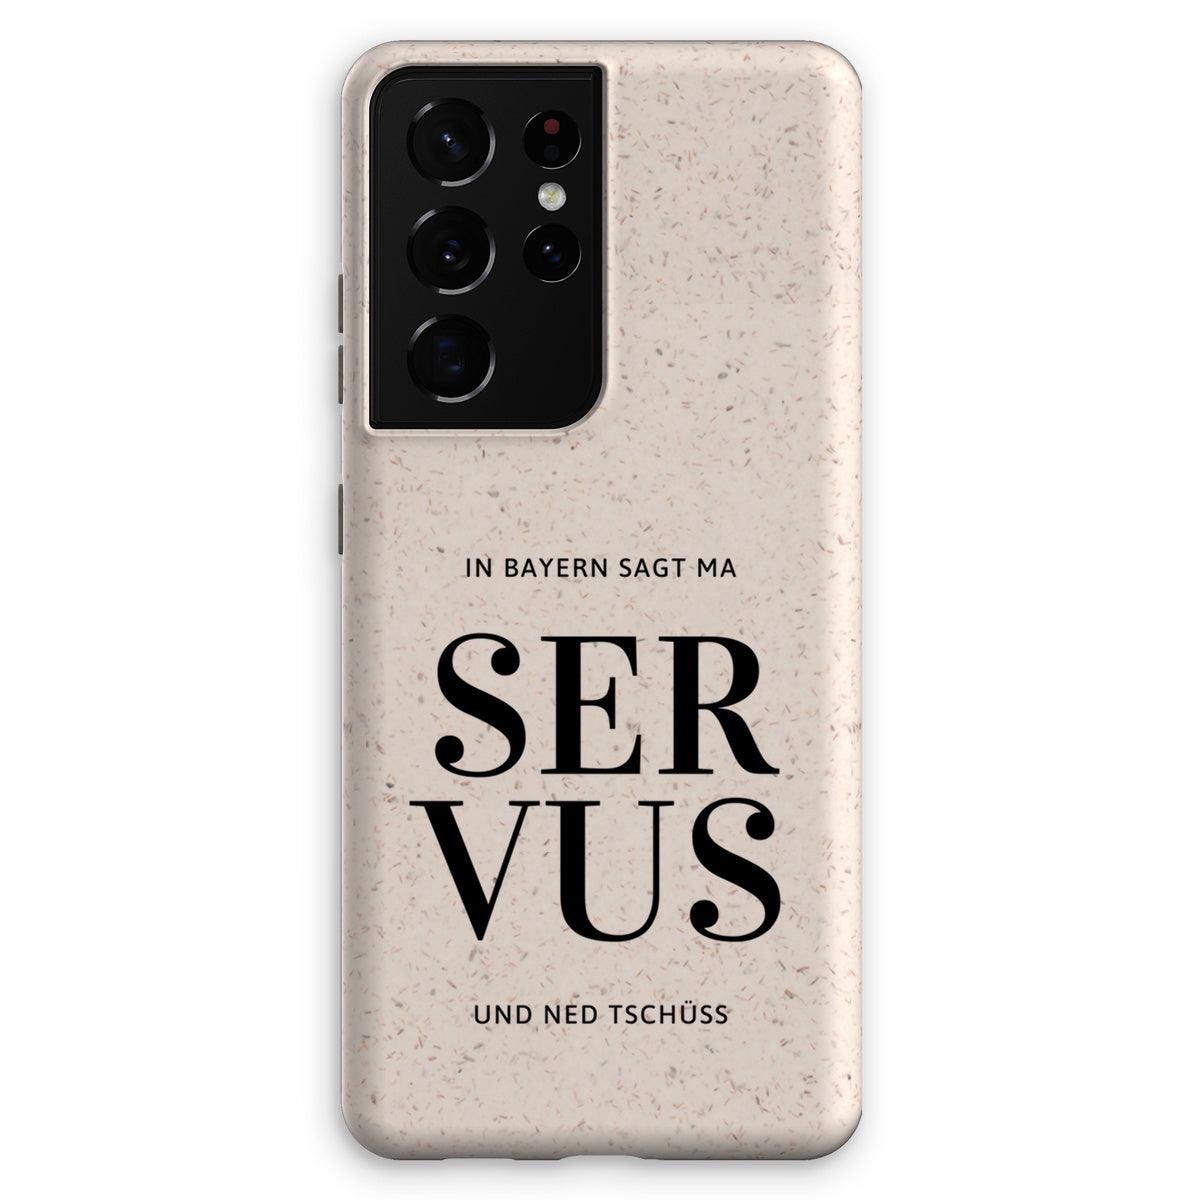 Bavarian Eco Phone Case "In Bayern sagt ma Servus", tough & raised edges - for Apple / Samsung models - Bavari Shop - Bavarian Outfits, Dirndl, Lederhosen & Accessories